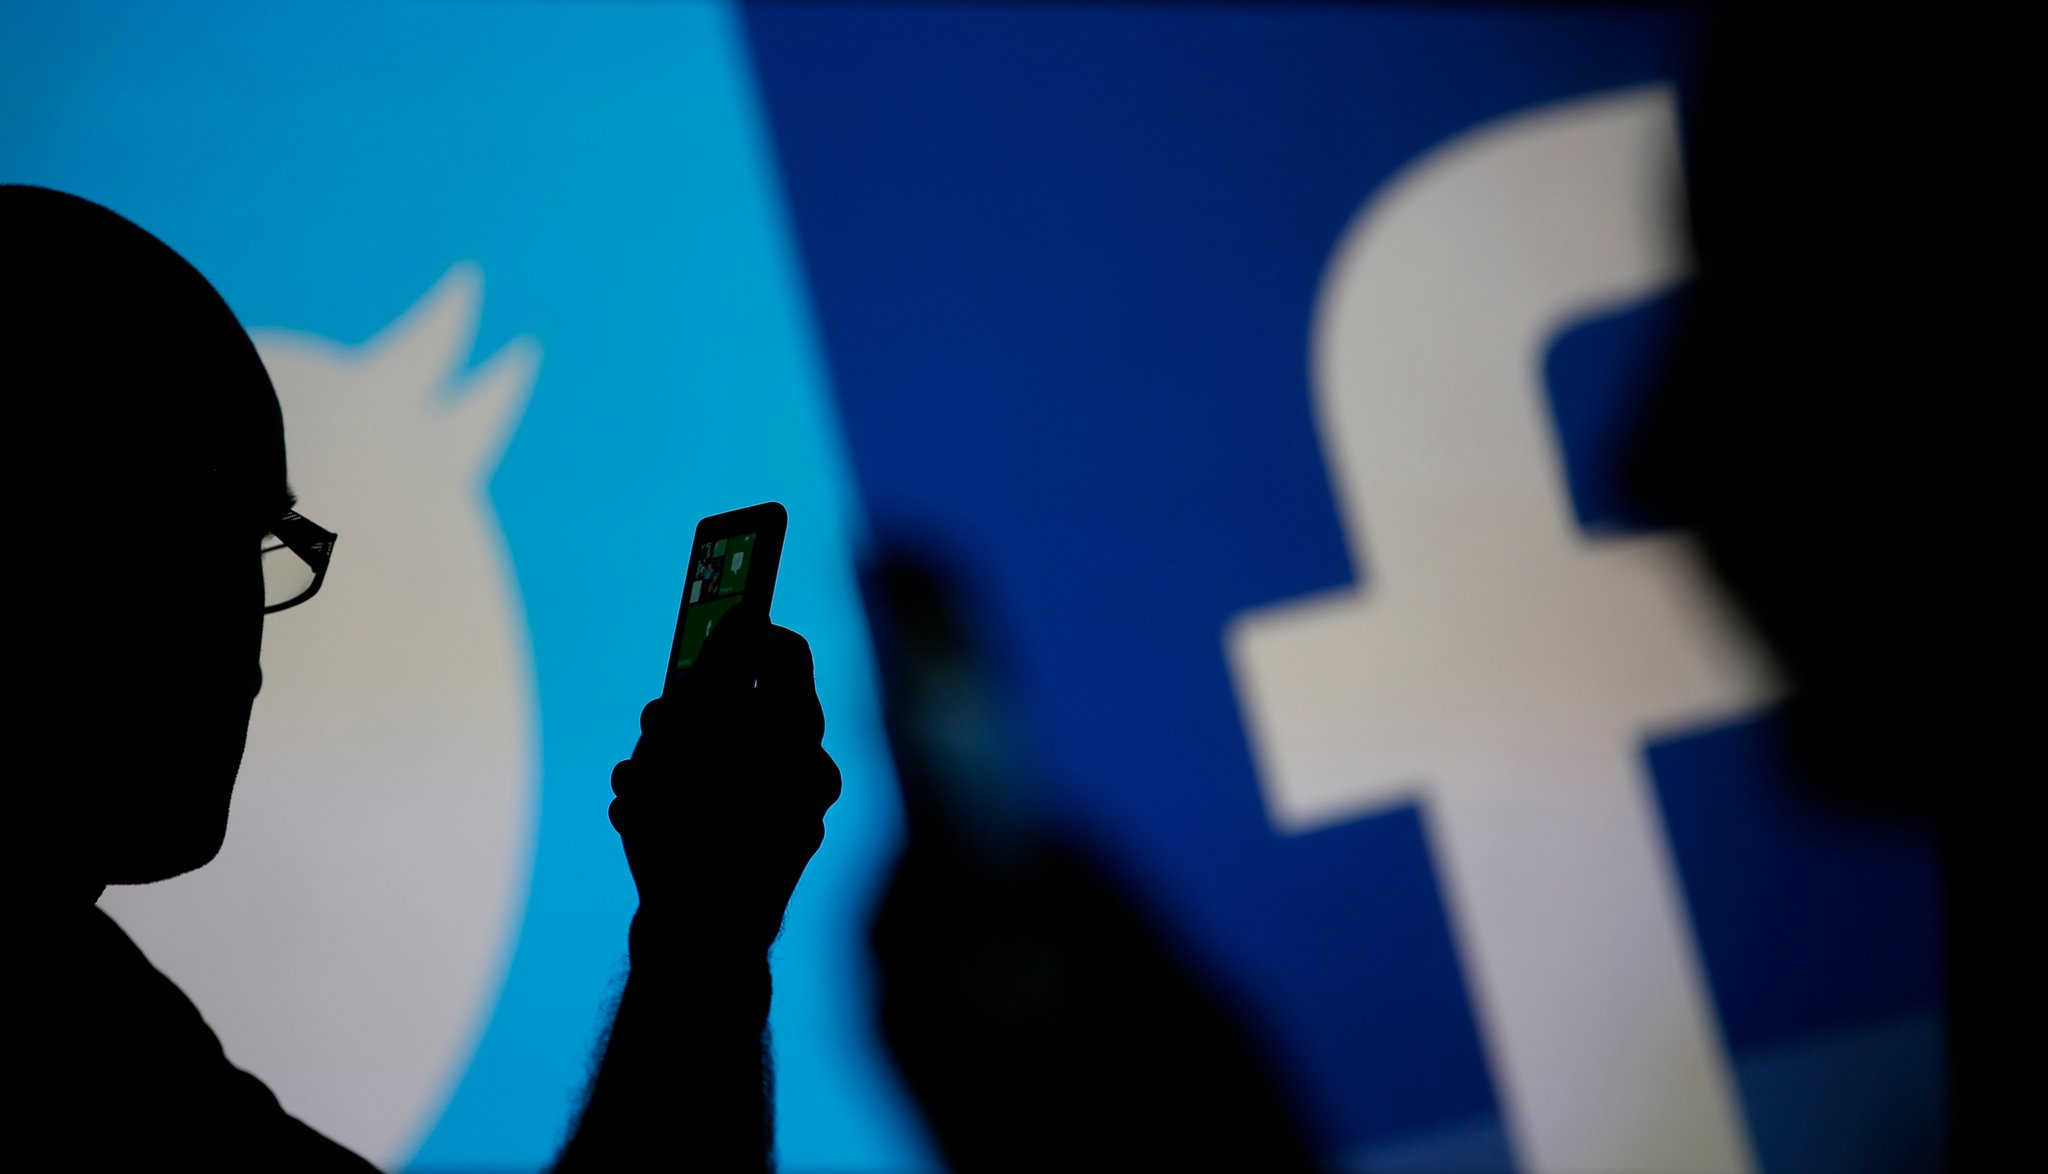 फेसबुक र ट्वीटरमा हुने विज्ञापनमा कर लगाउन सरकारलाई निर्देशन